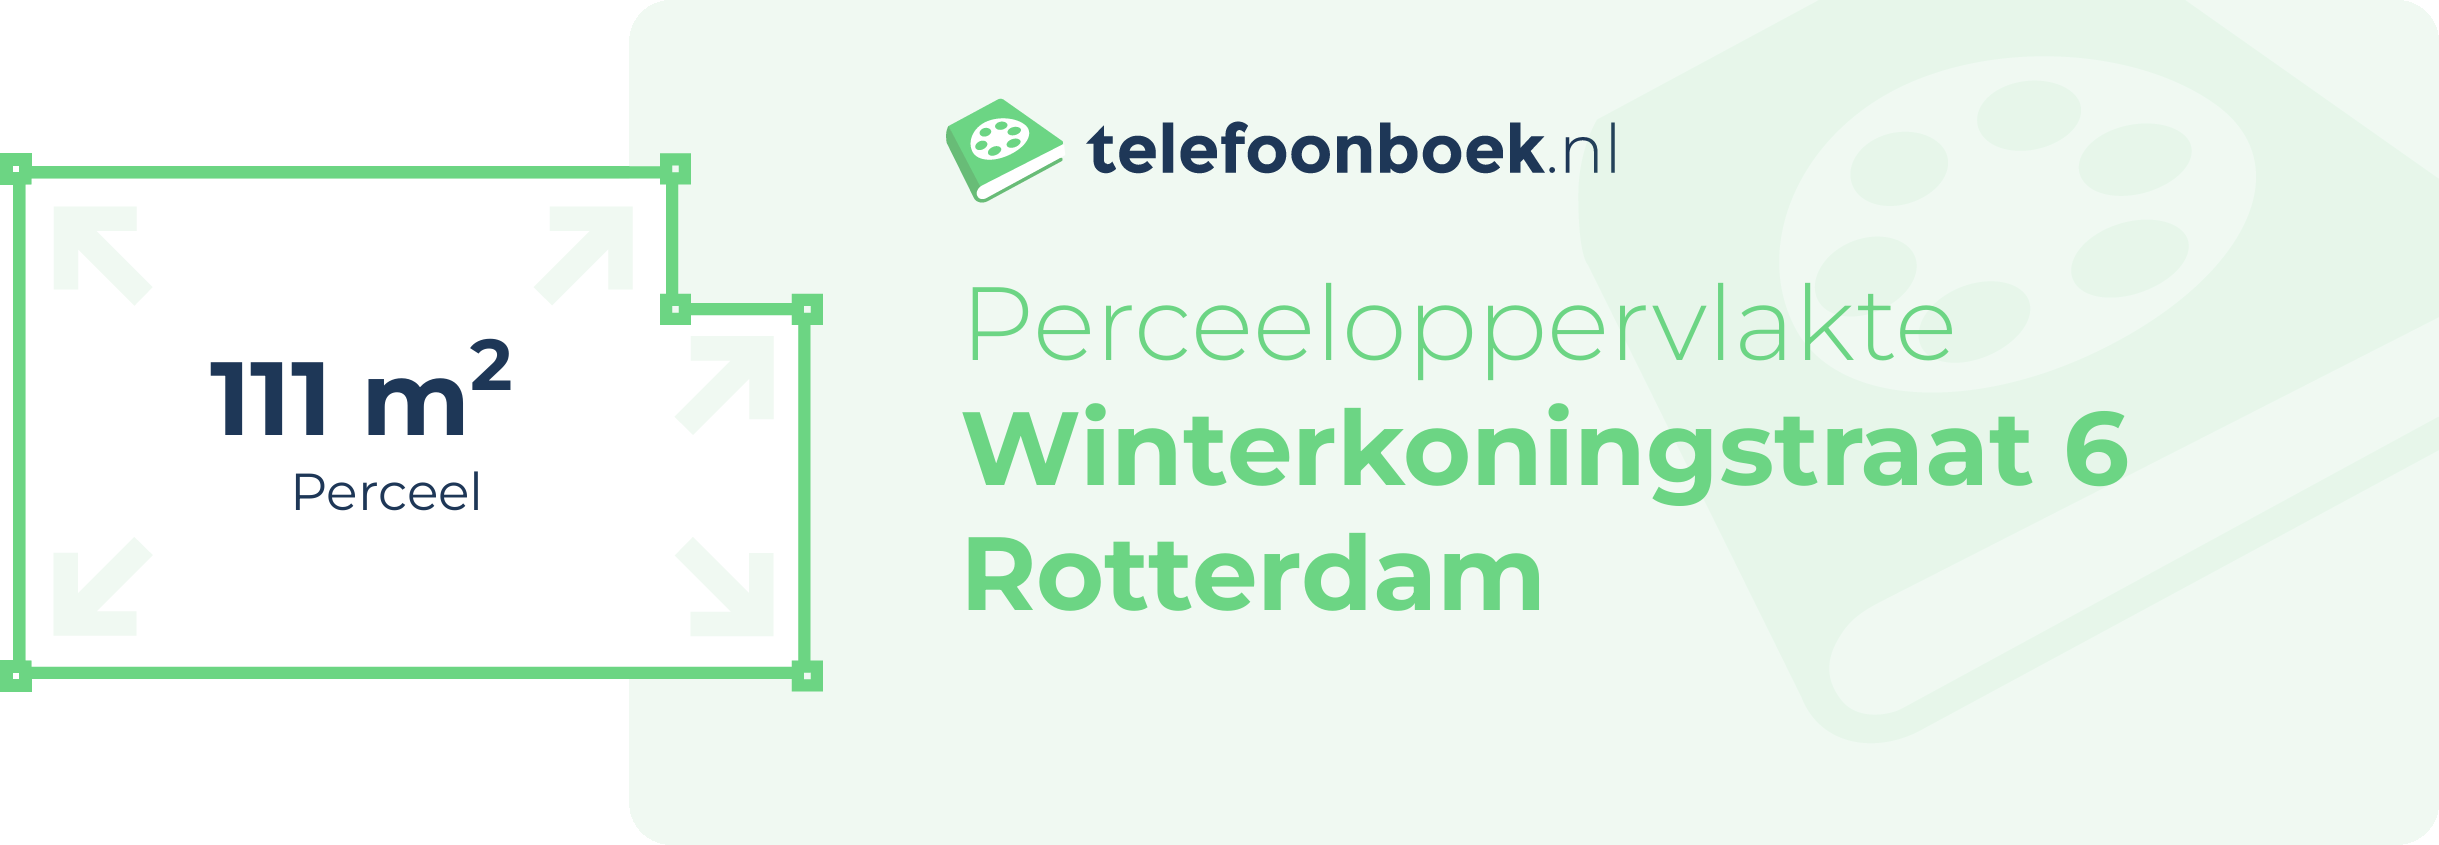 Perceeloppervlakte Winterkoningstraat 6 Rotterdam